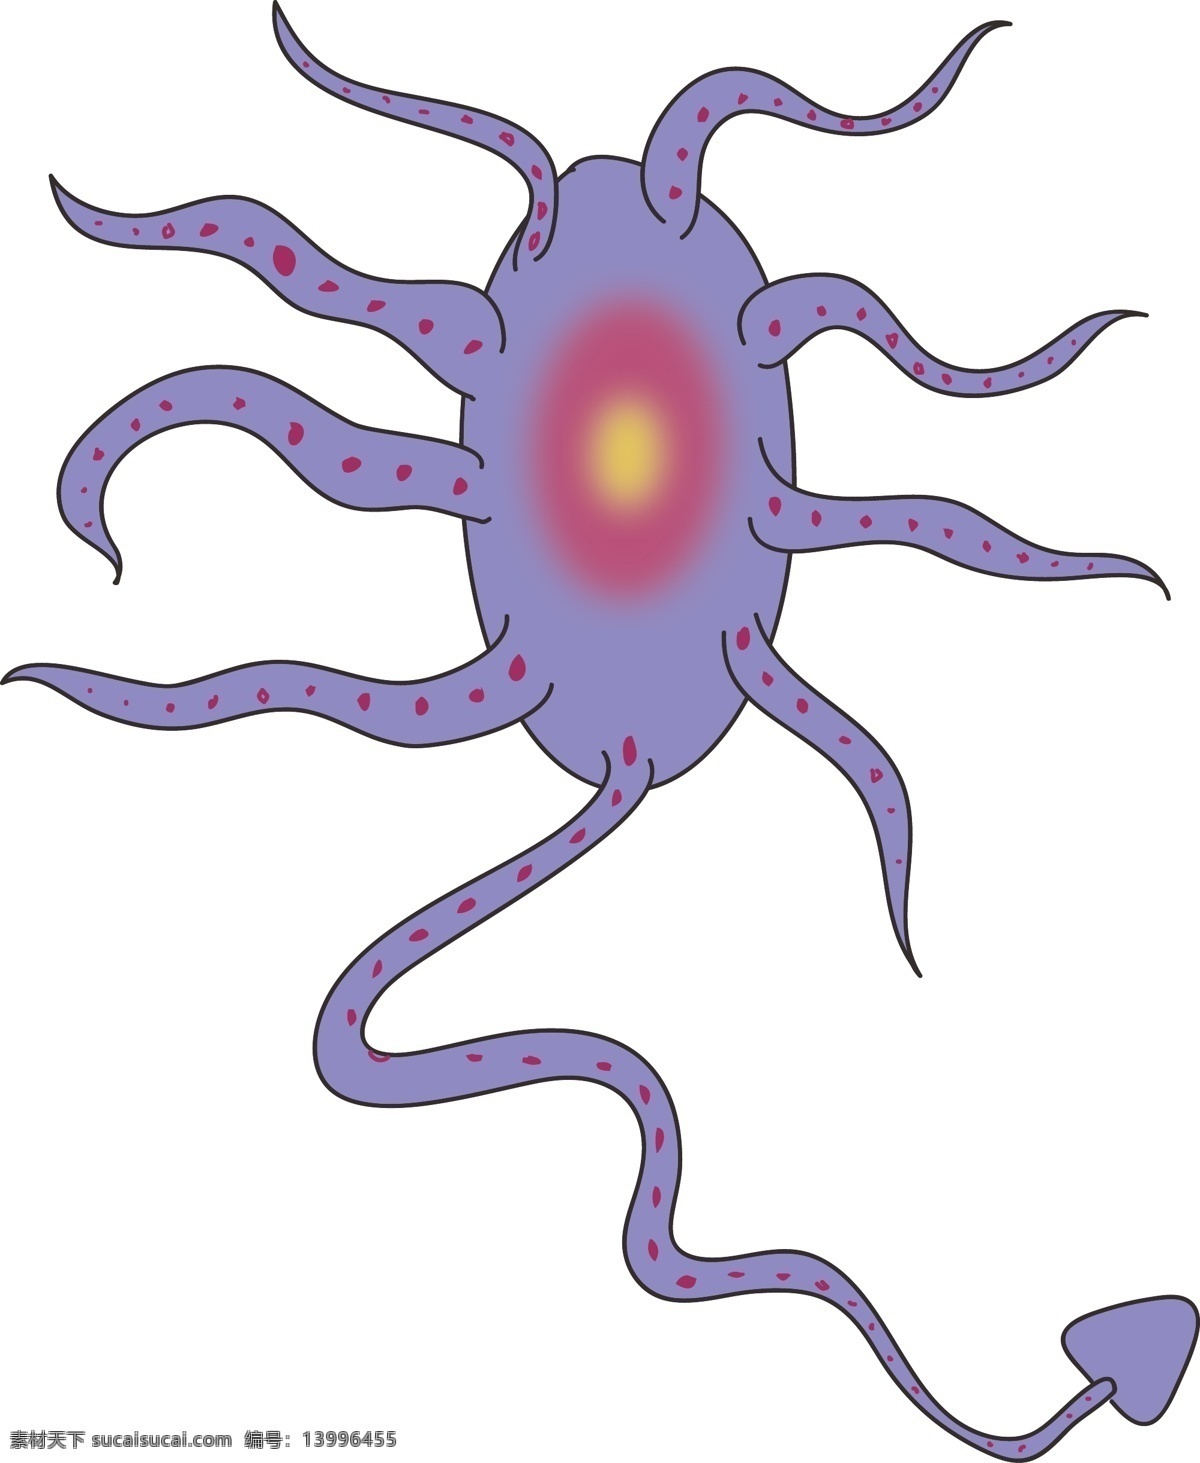 紫色 细菌 卡通 插画 紫色的细菌 细菌插画 卡通插画 细胞膜插画 细胞壁 核糖体 病菌 原核生物